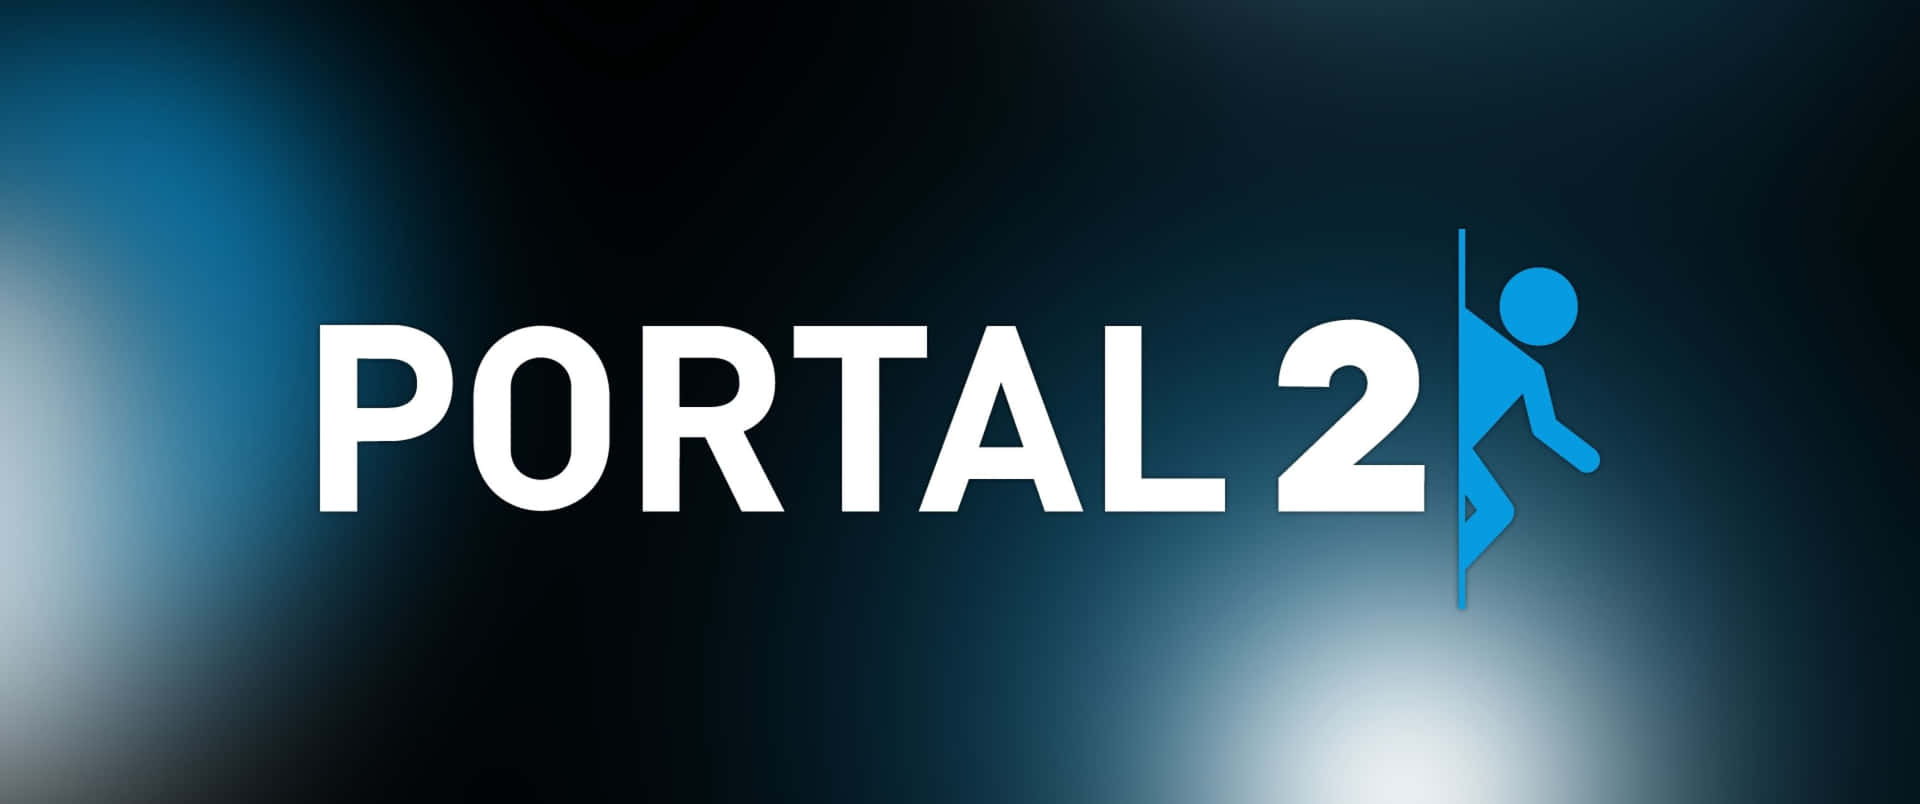 Portal2 - Un Logo Blu Con Un Uomo Su Di Esso.